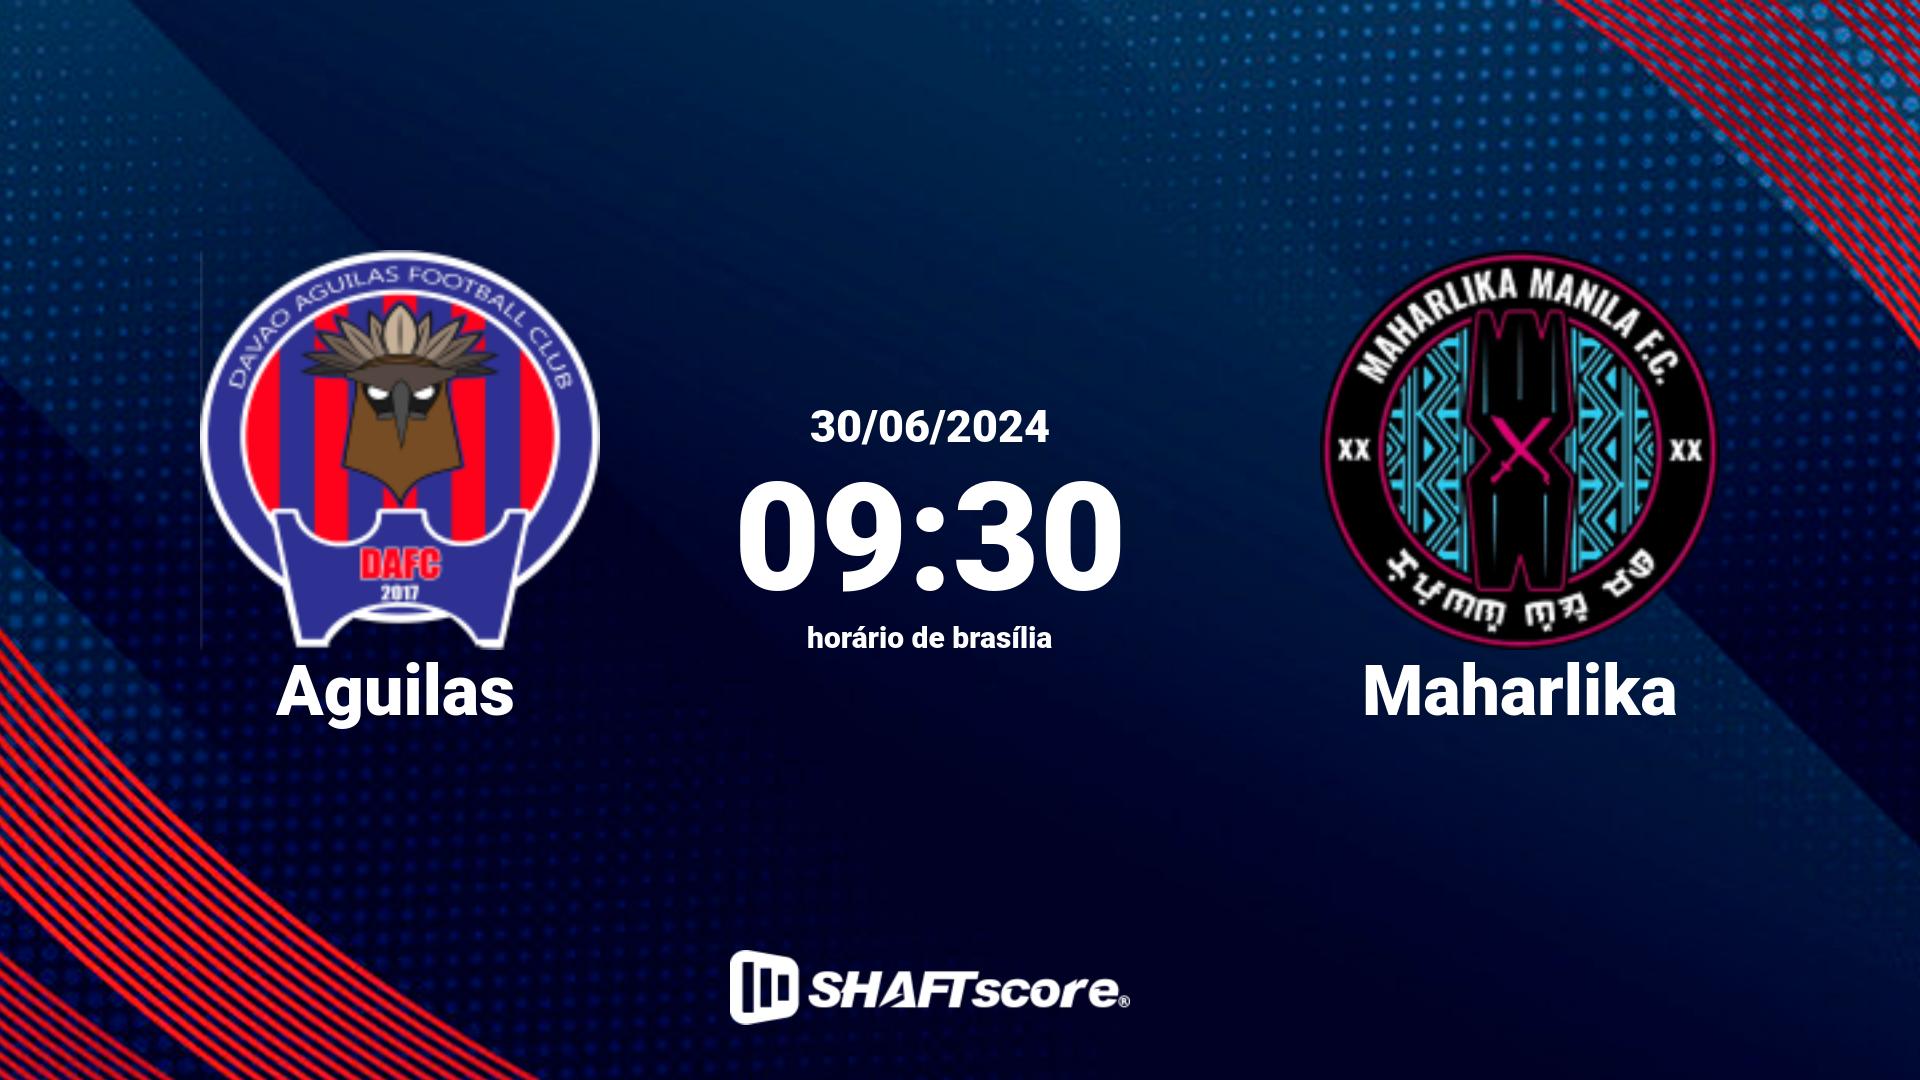 Estatísticas do jogo Aguilas vs Maharlika 30.06 09:30